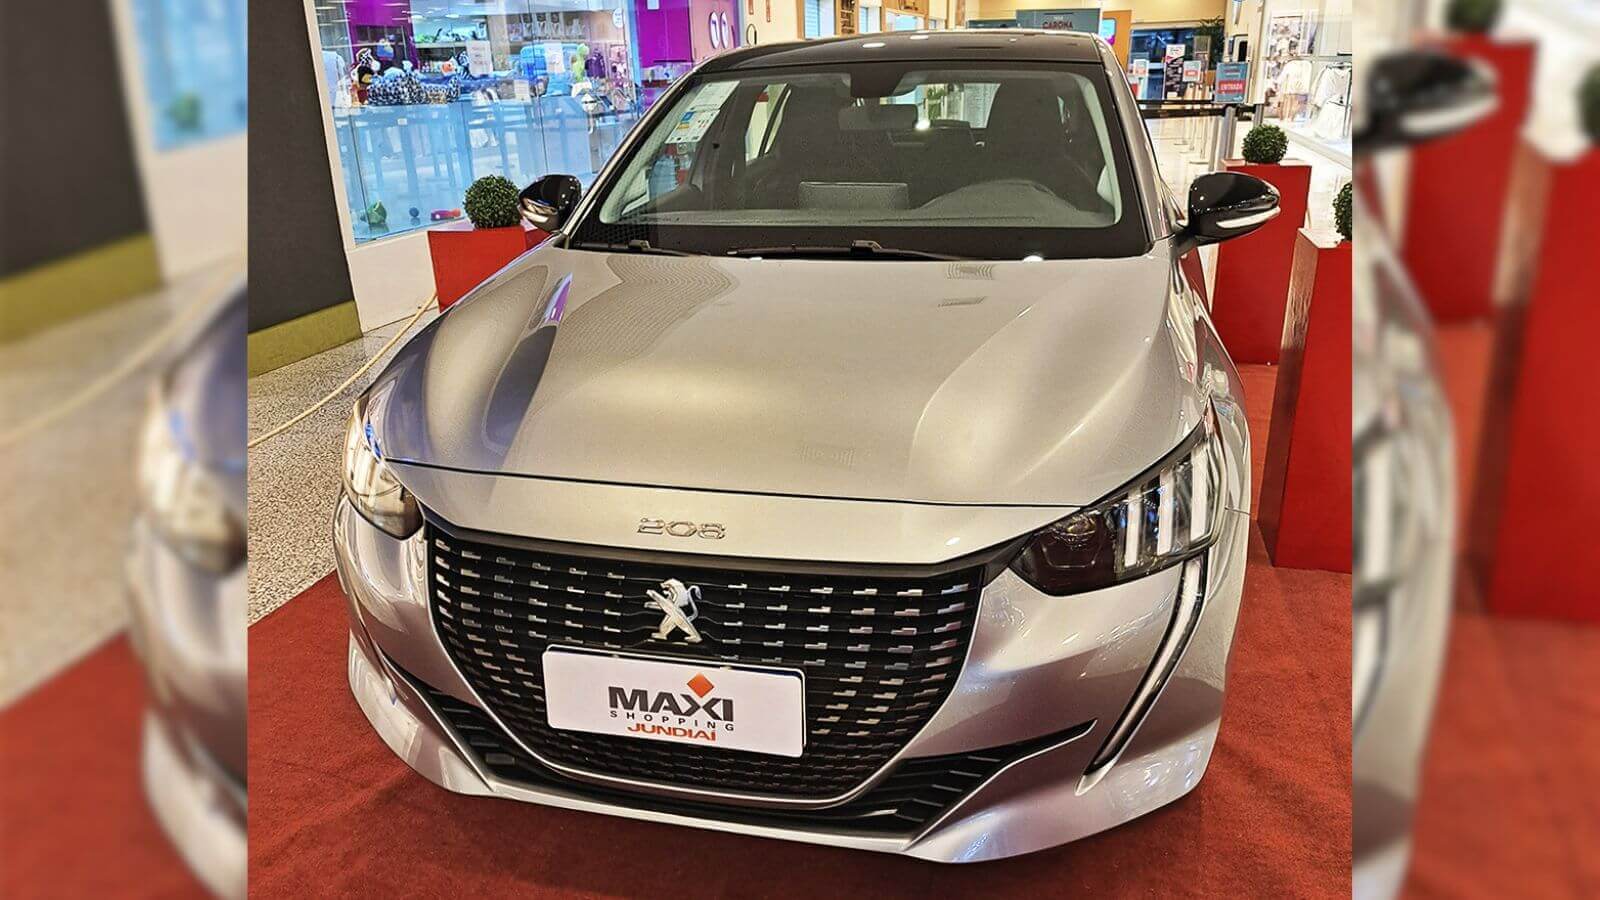 Maxi Shopping sorteará carro 0km em campanha de Dia dos Namorados